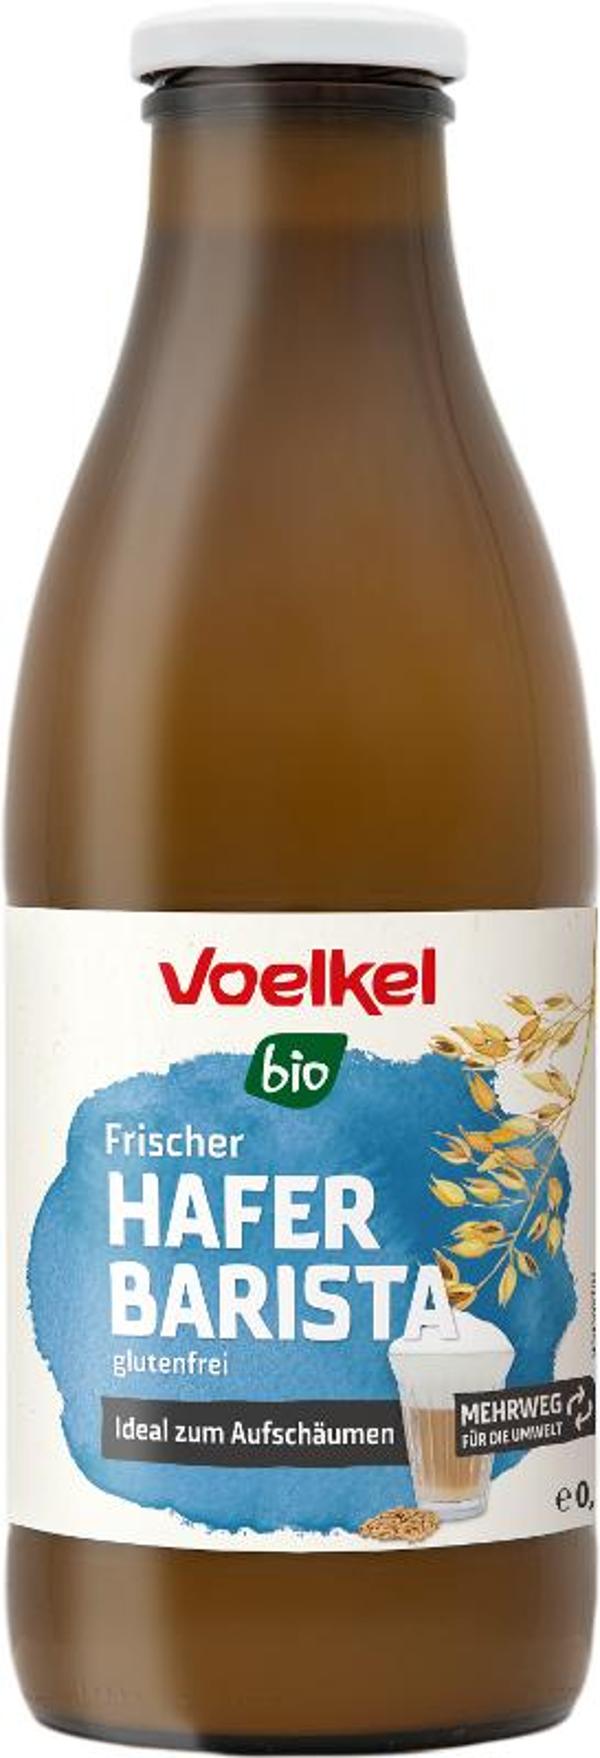 Produktfoto zu VPE Frischer Hafer Drink Barista 6x1l Voelkel